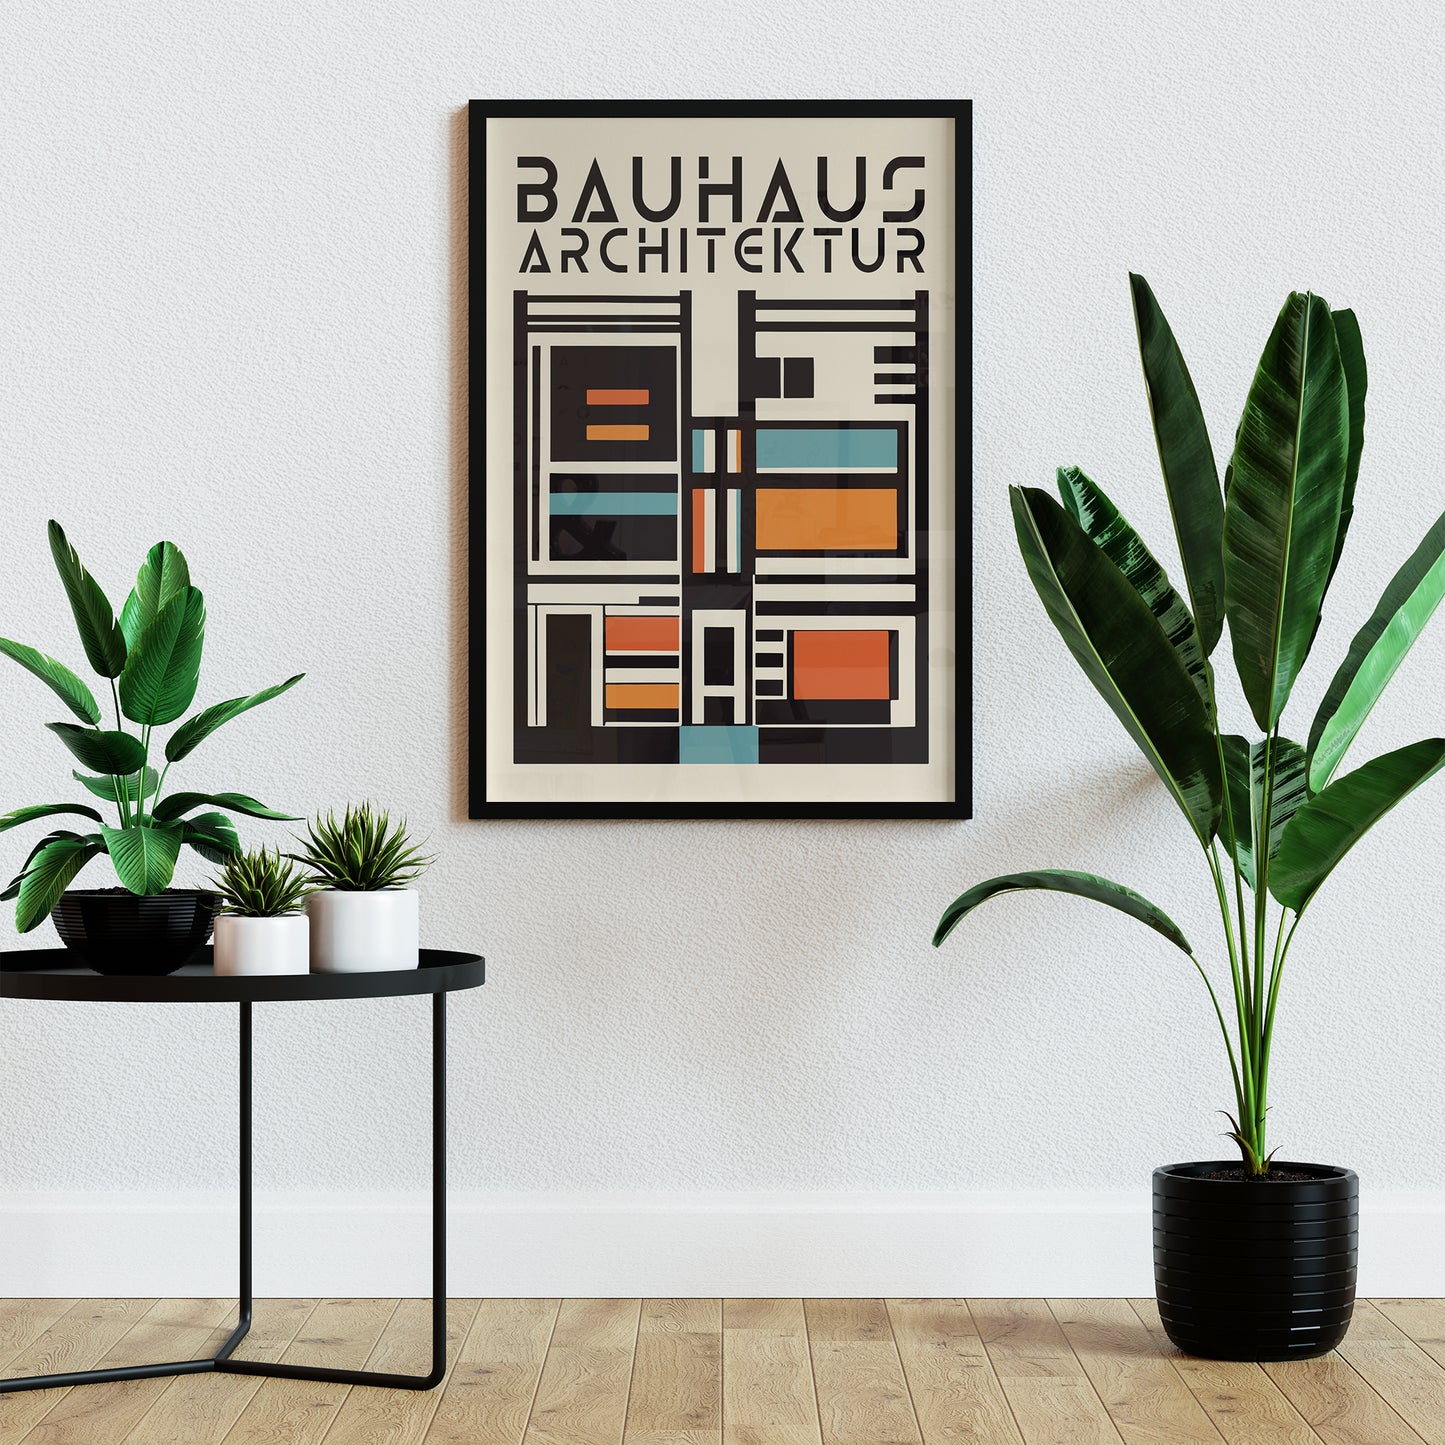 Bauhaus Architektur Poster